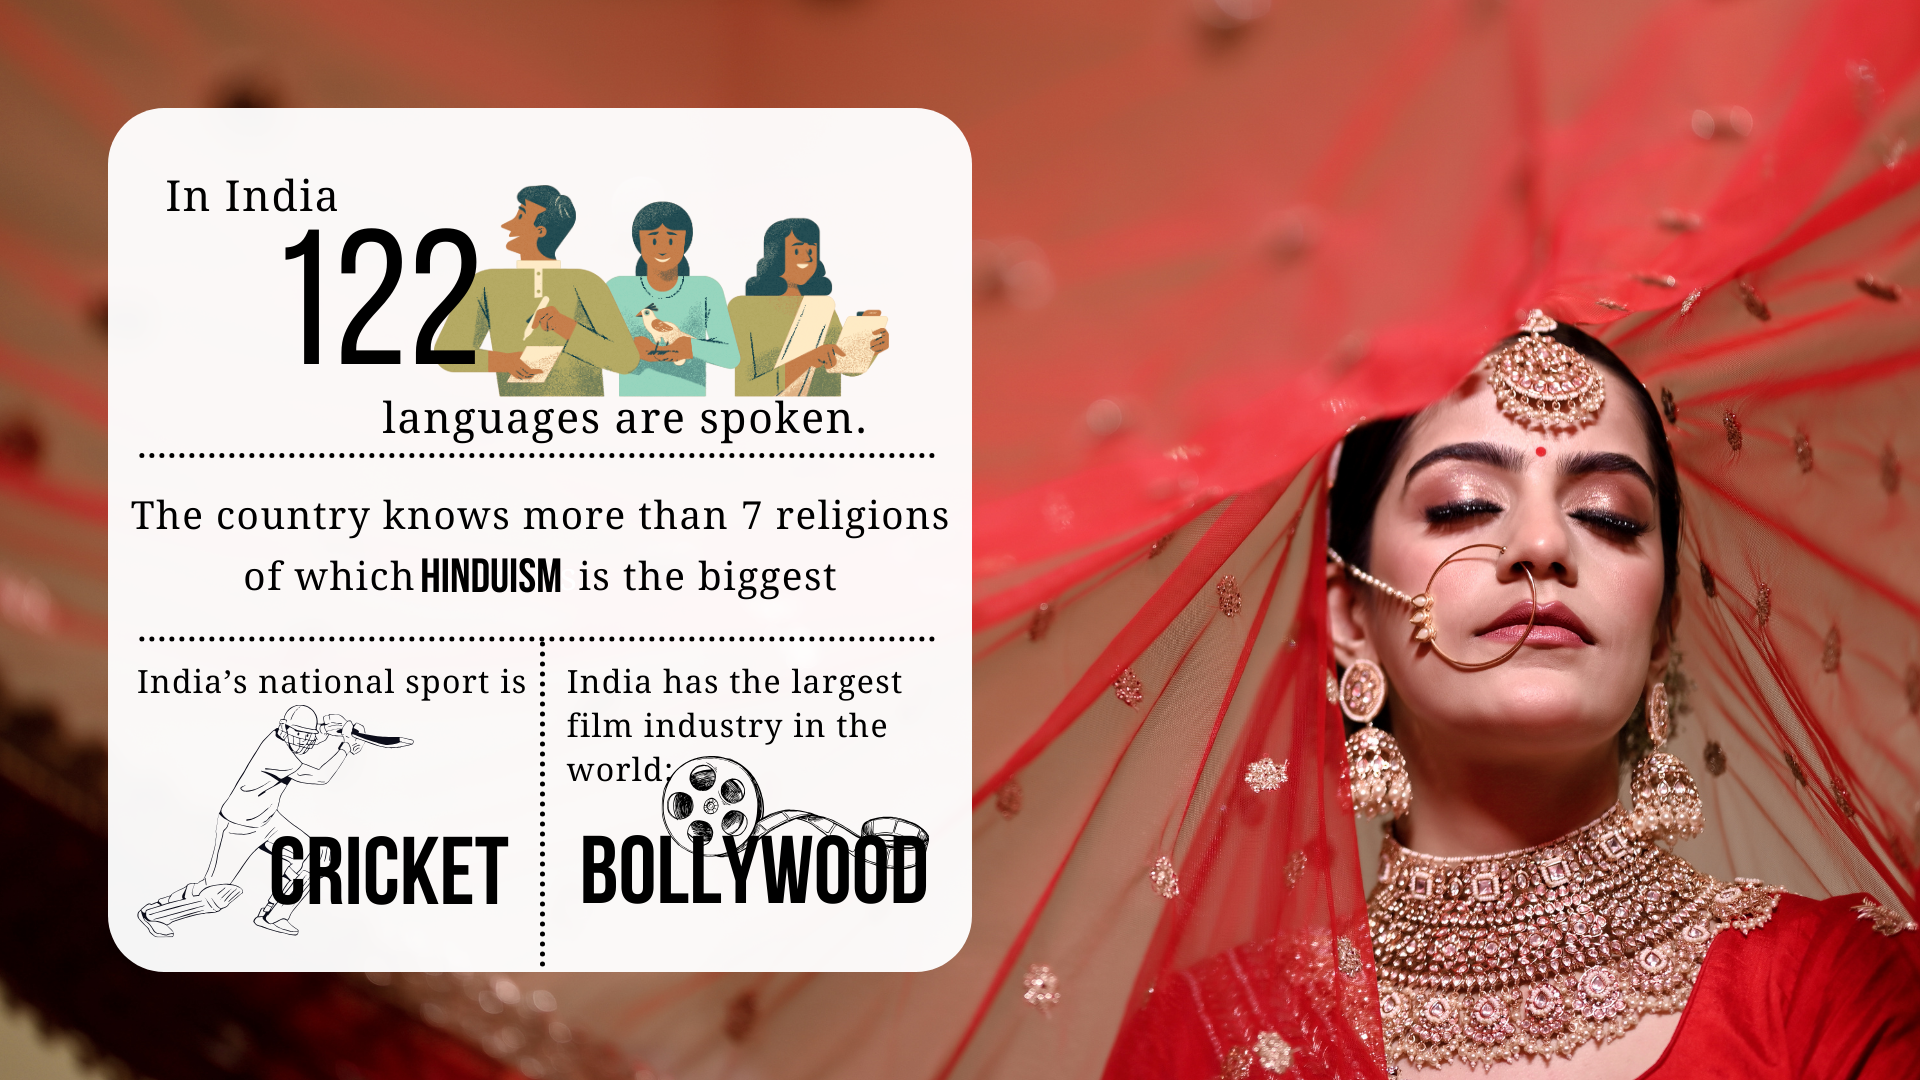 In India si parlano 122 lingue, ci sono 6 religioni principali di cui l'induismo è la più grande; lo sport nazionale indiano è il cricket e ha la più grande industria cinematografica del mondo: Bollywood.